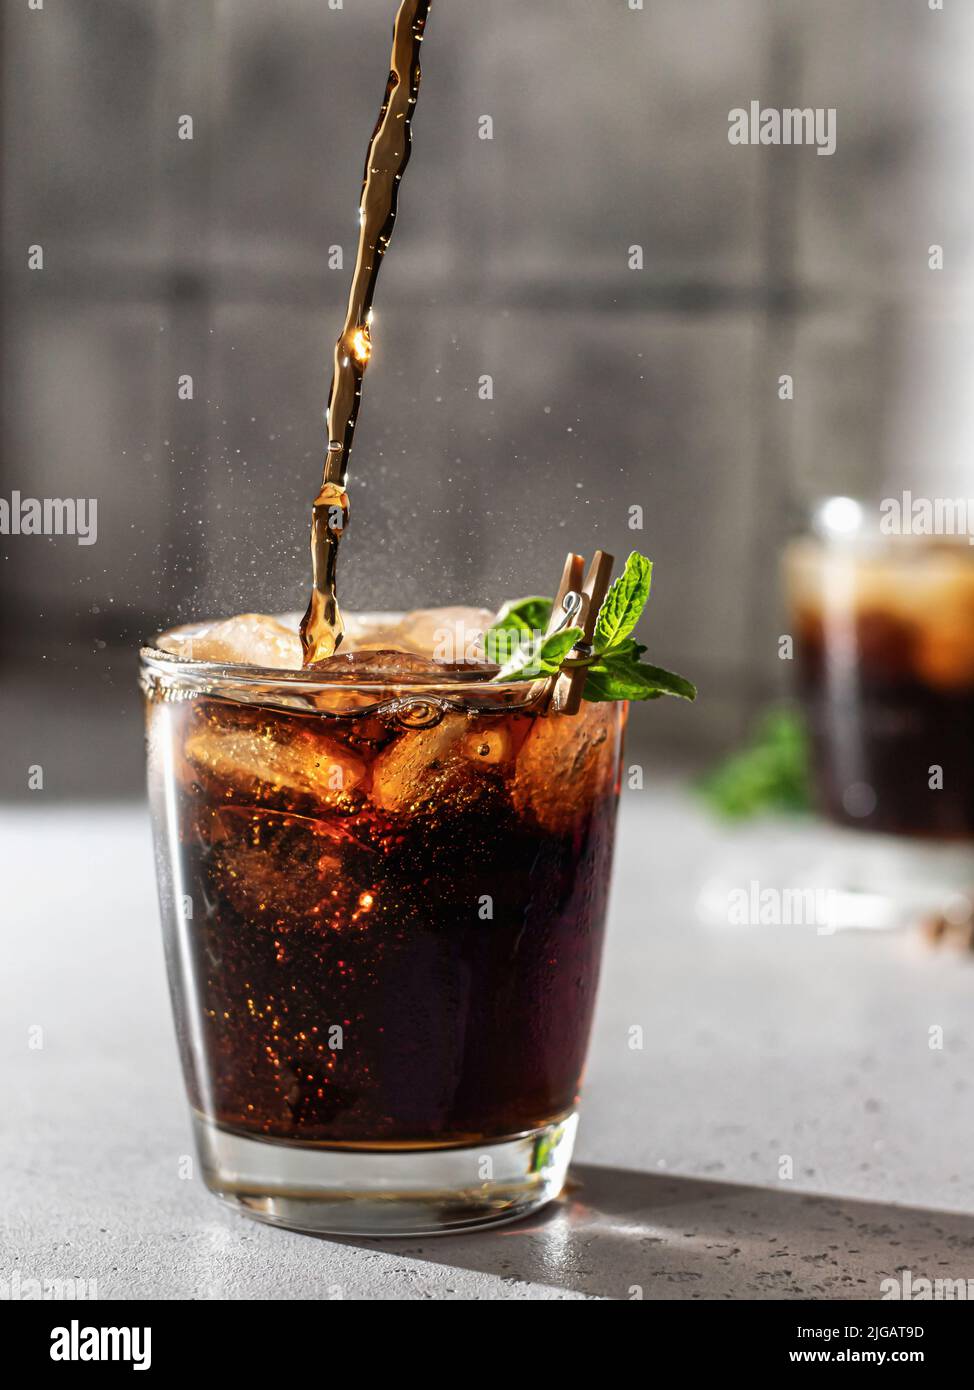 Cola oder cuba Libre Cocktail in Glas mit Eiswürfeln und Minze gießen. Softdrink mit Spritzwasser. Vertikale Ausrichtung Stockfoto